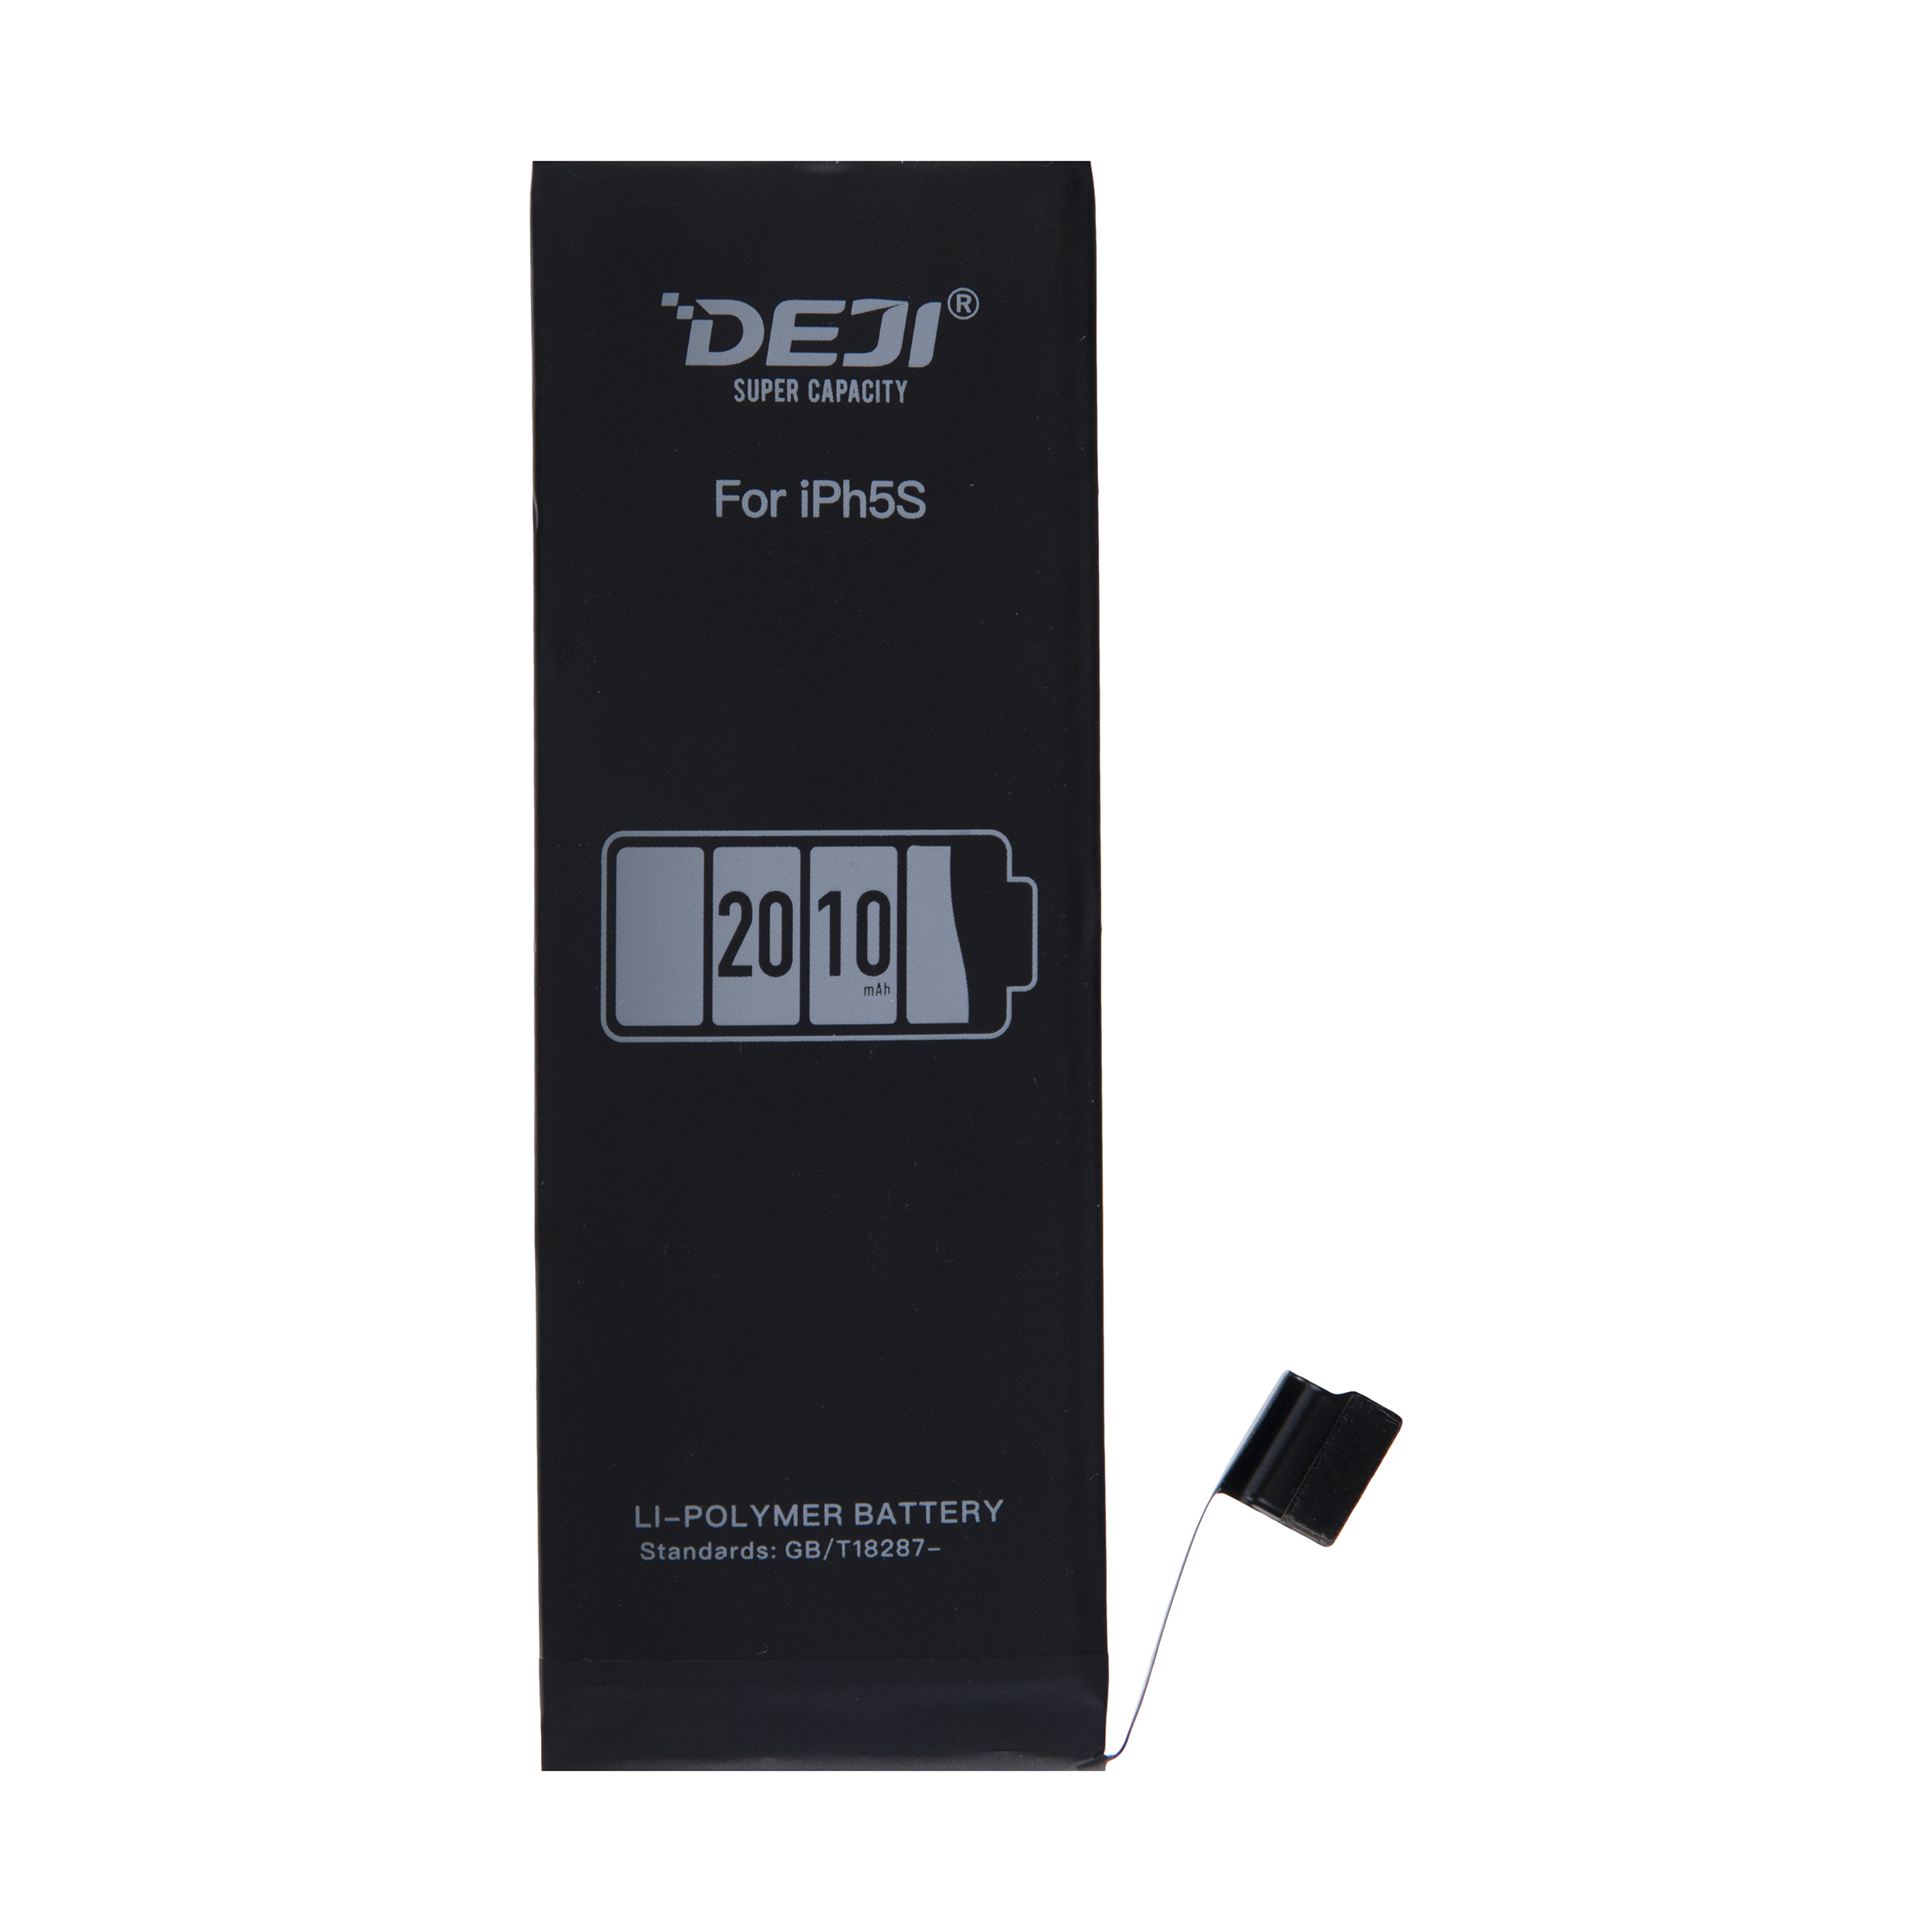 باتری موبایل دجی مدل DJ-IPH5S ظرفیت 2010 میلی آمپر ساعت مناسب برای گوشی موبایل اپل iPhone 5S